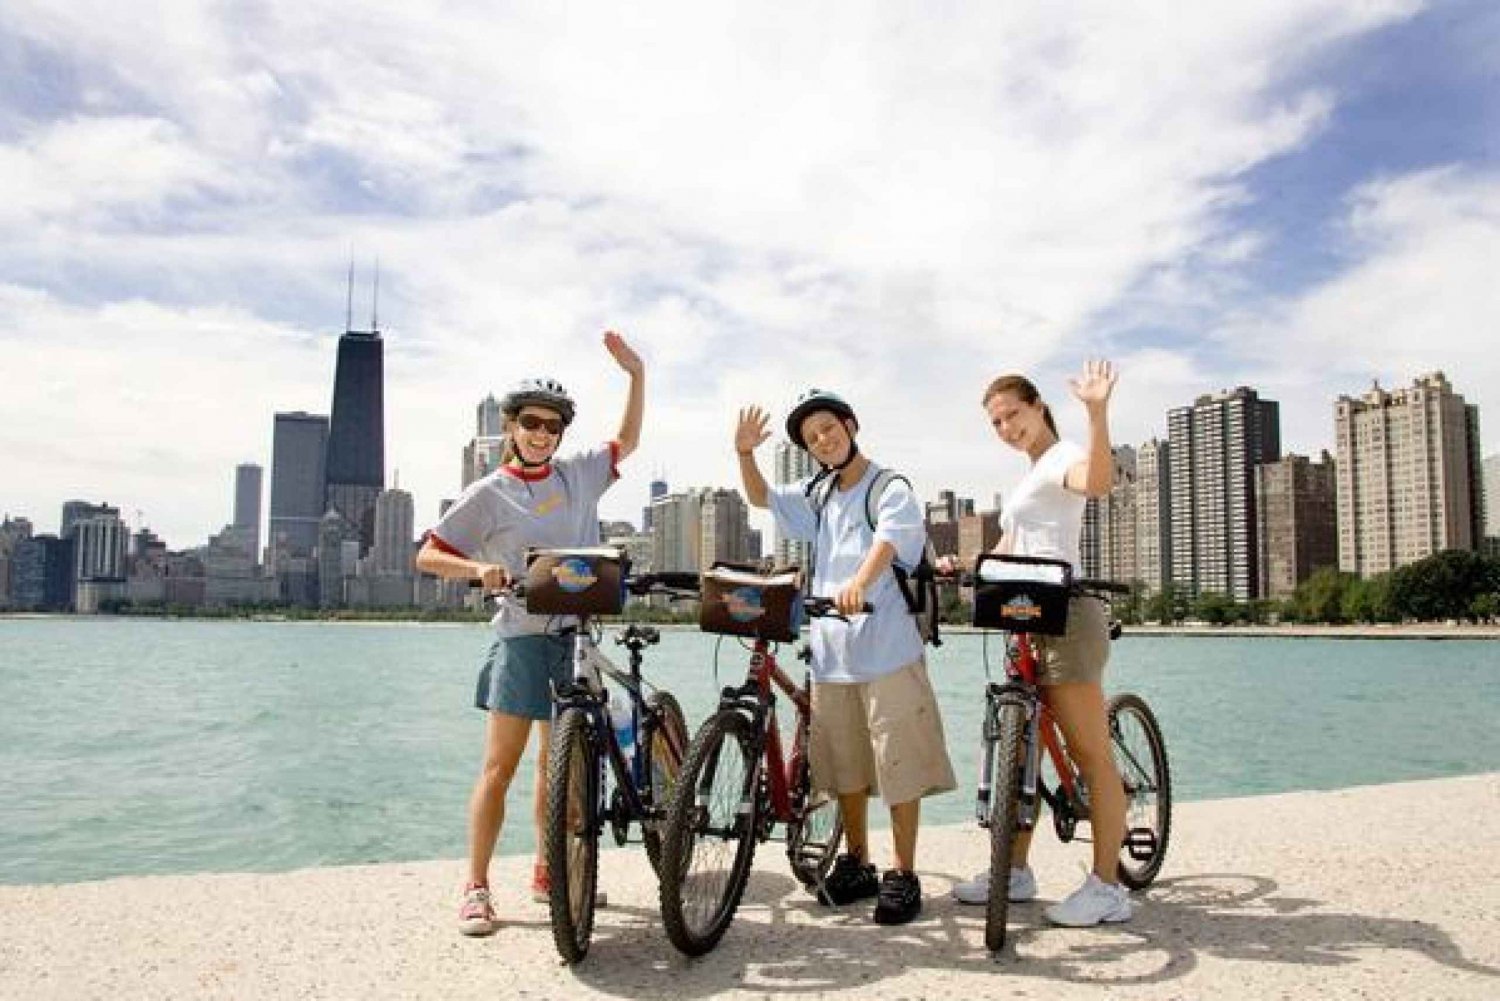 Bike and Roll Chicago: noleggio bici giornaliero